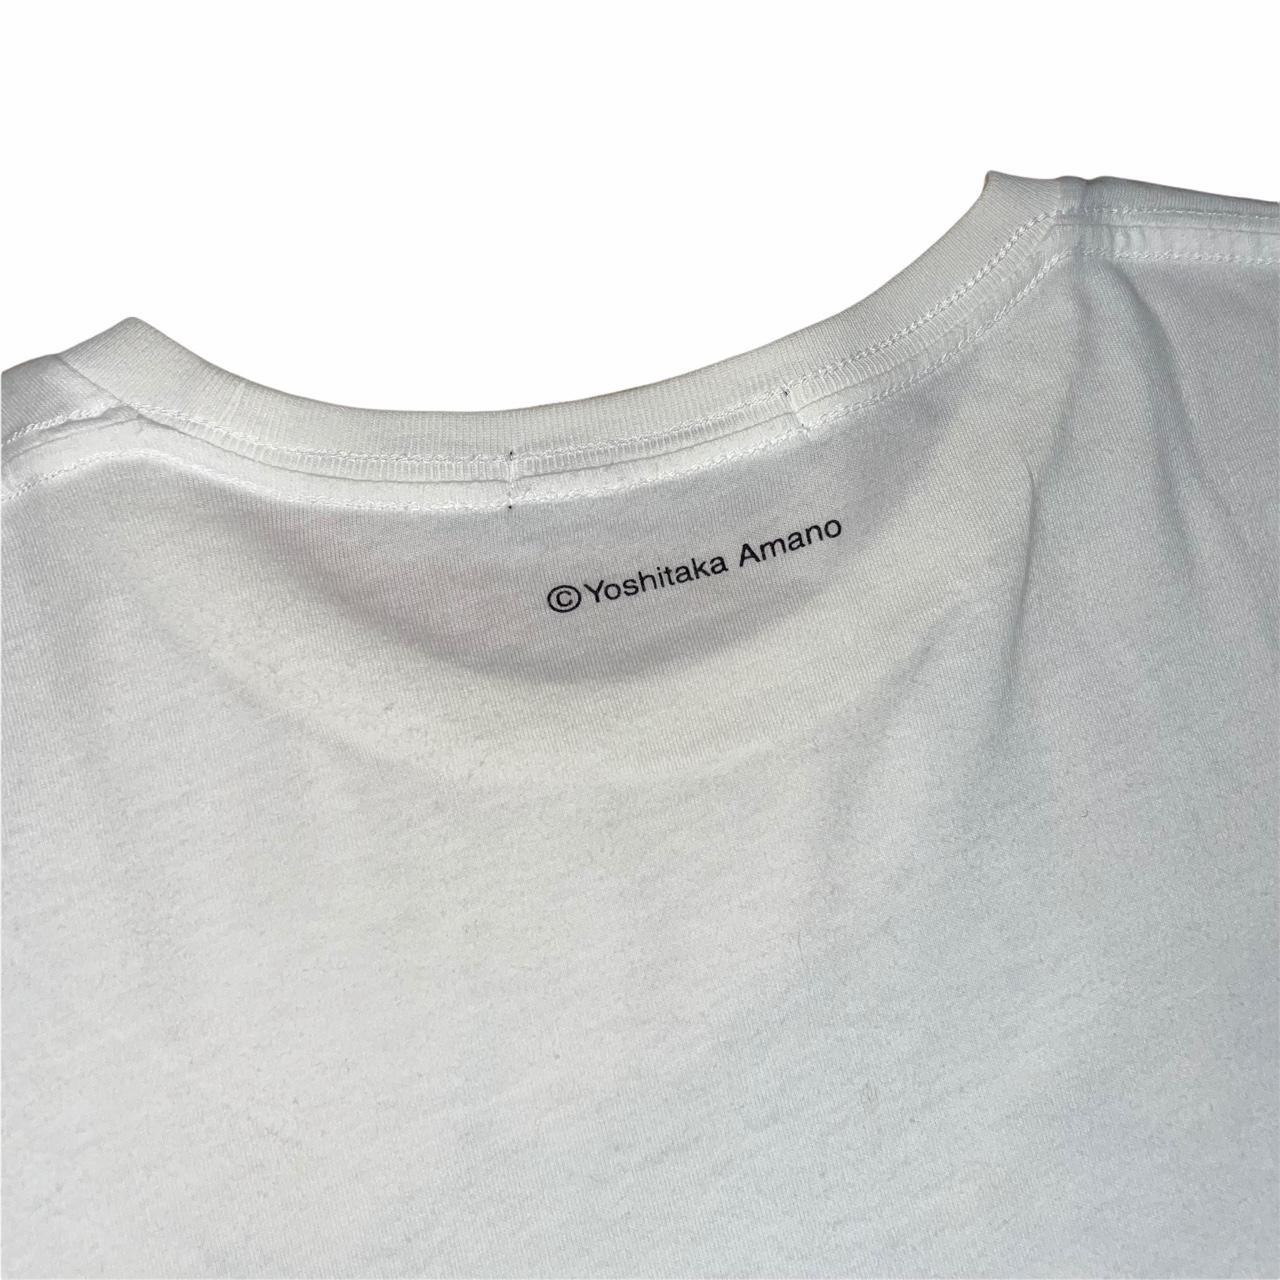 Yoshitaka Amano t-shirt 💧 💧 rare Uniqlo Creative... - Depop